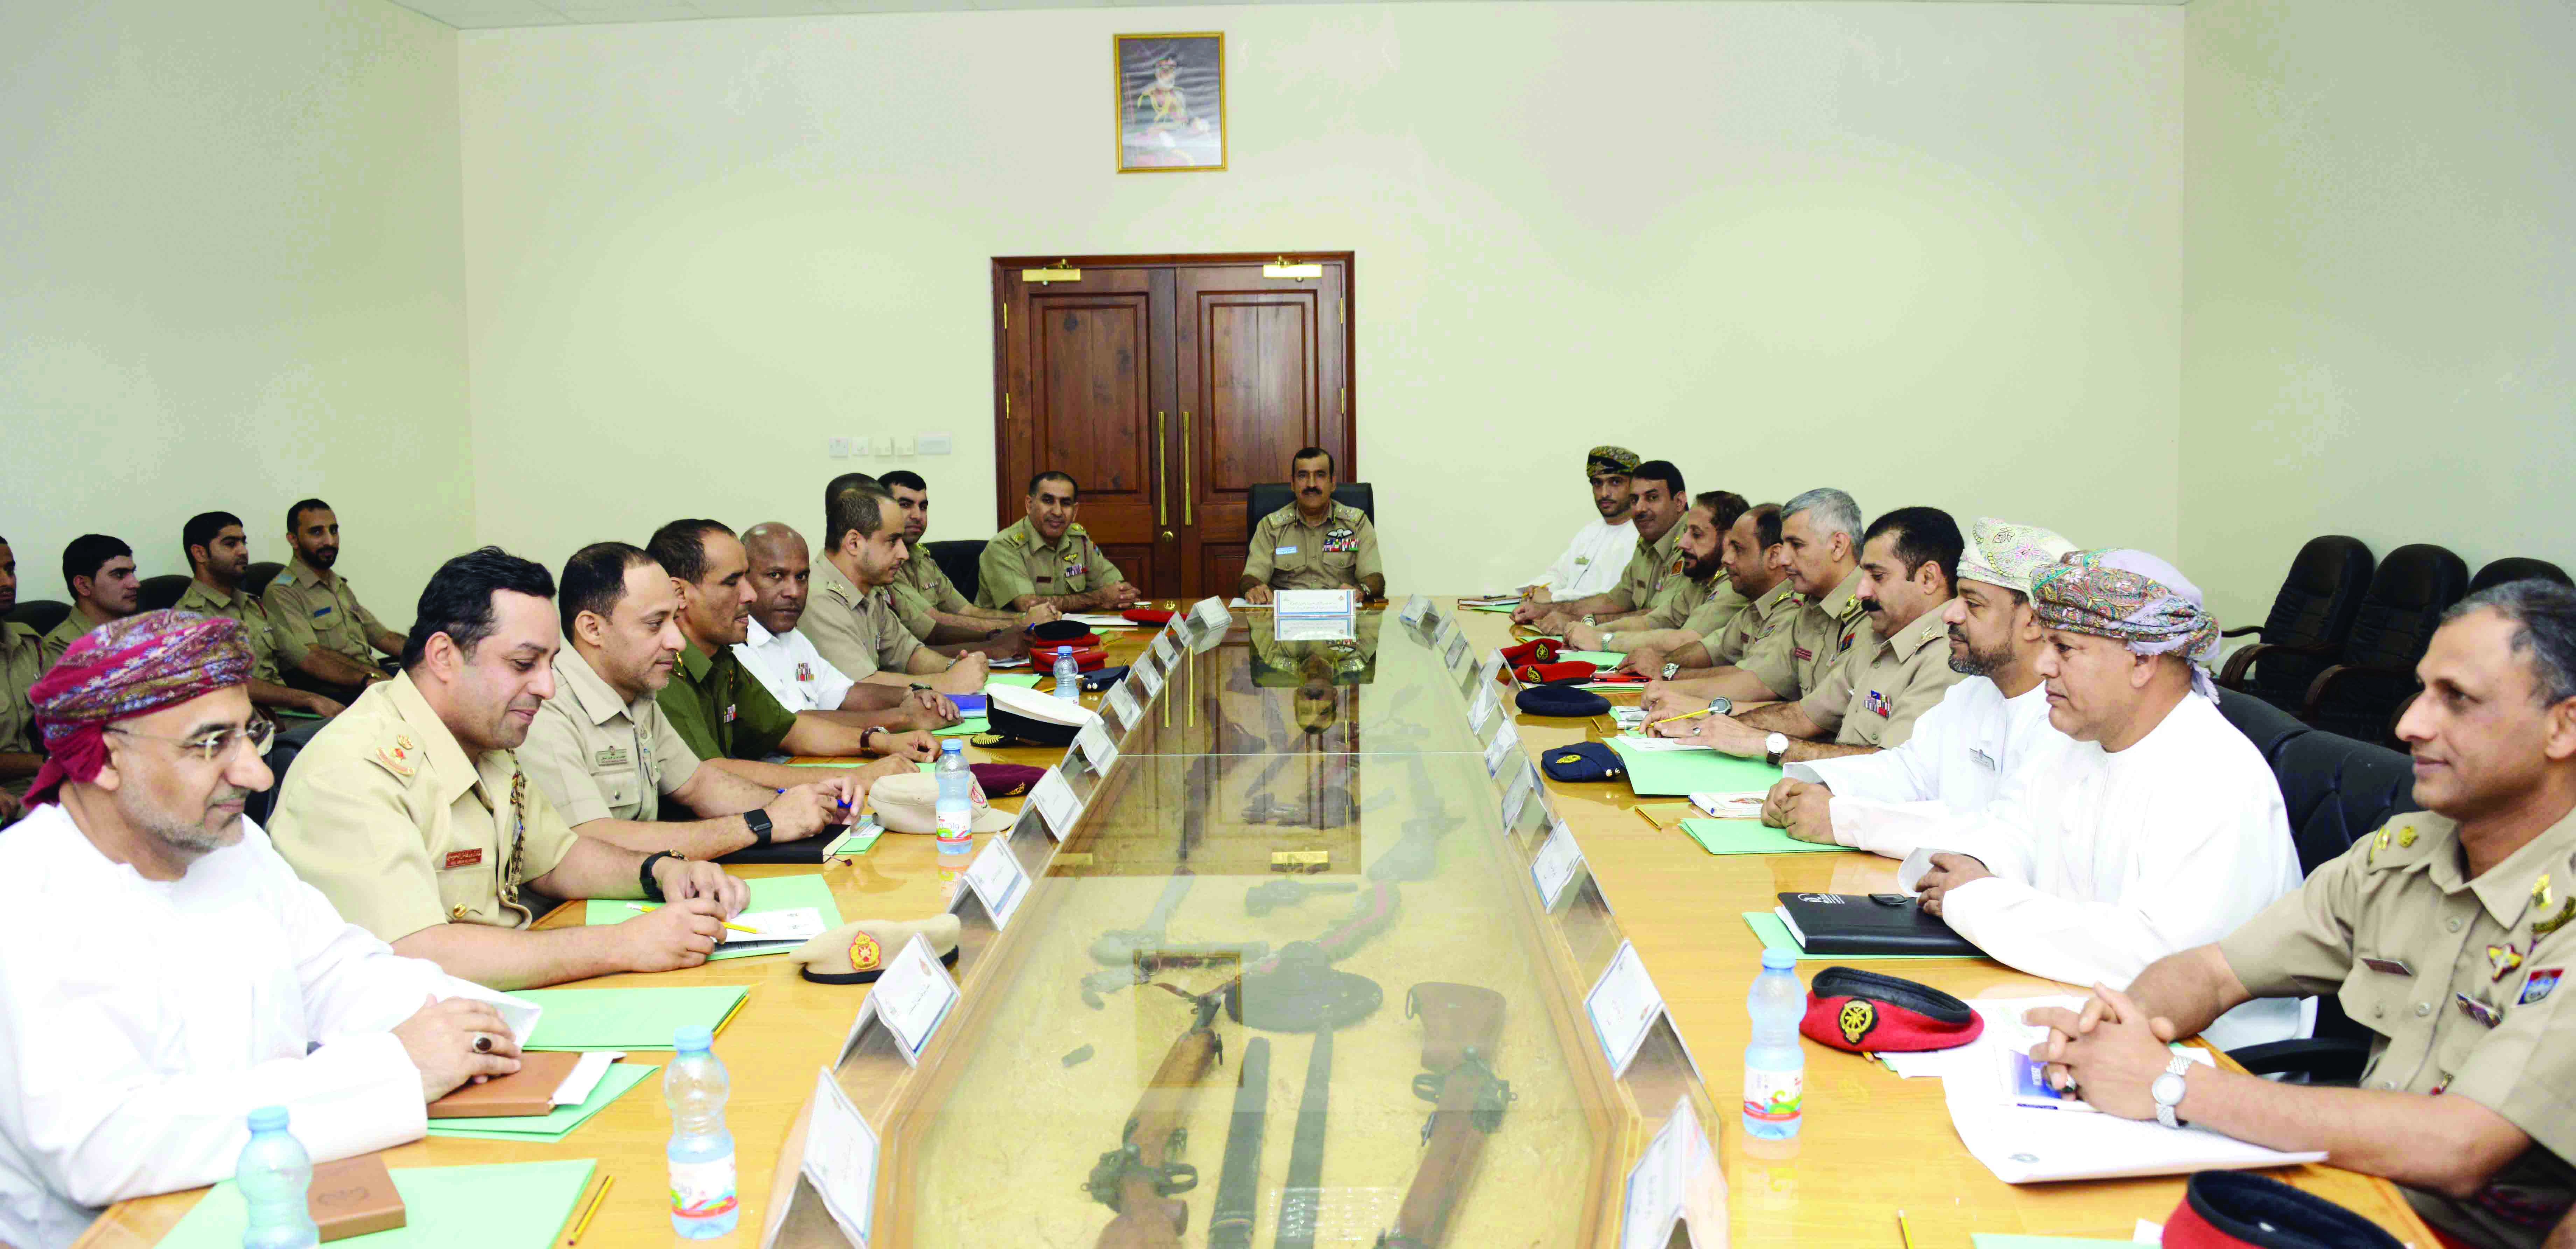 اللجنة الرئيسية تكمل استعدادها لاستضافة المونديال العسكري